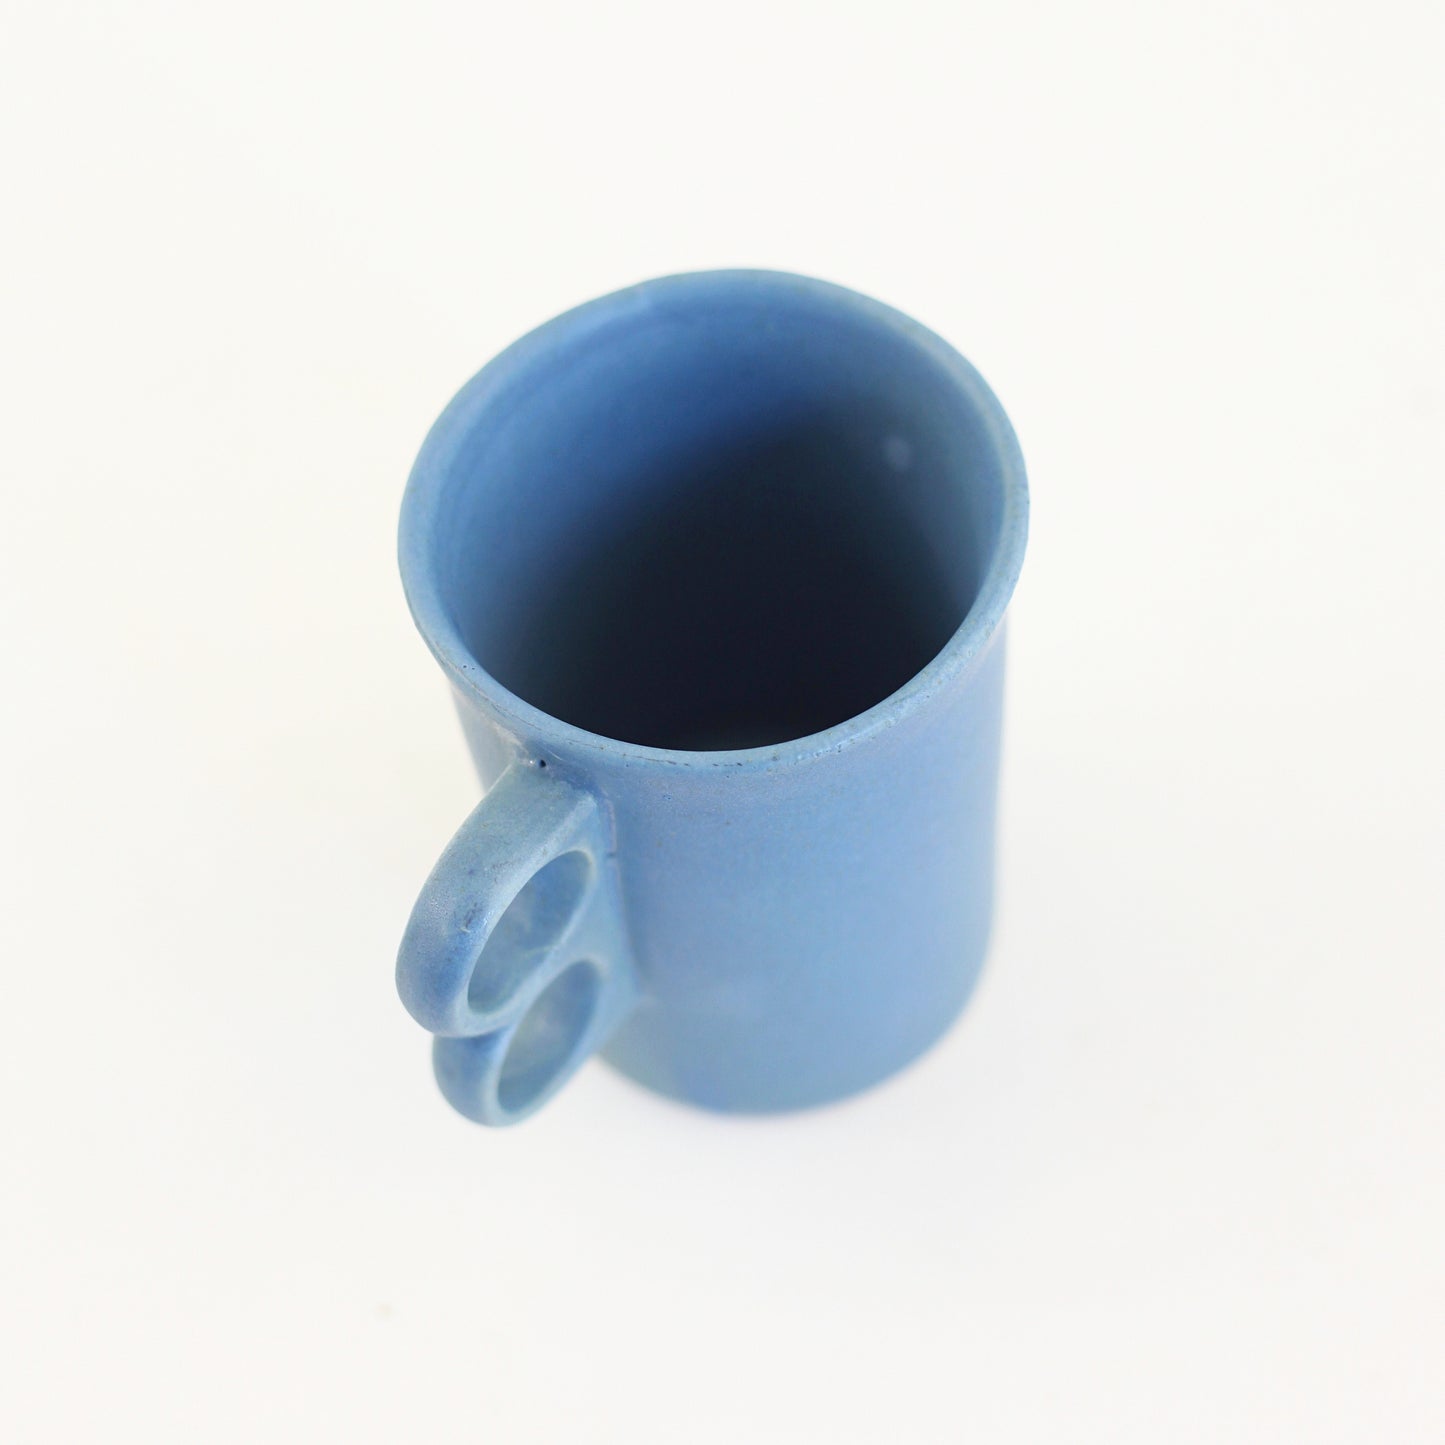 SOLD - Bennington Potters Blue Trigger Handle Mug